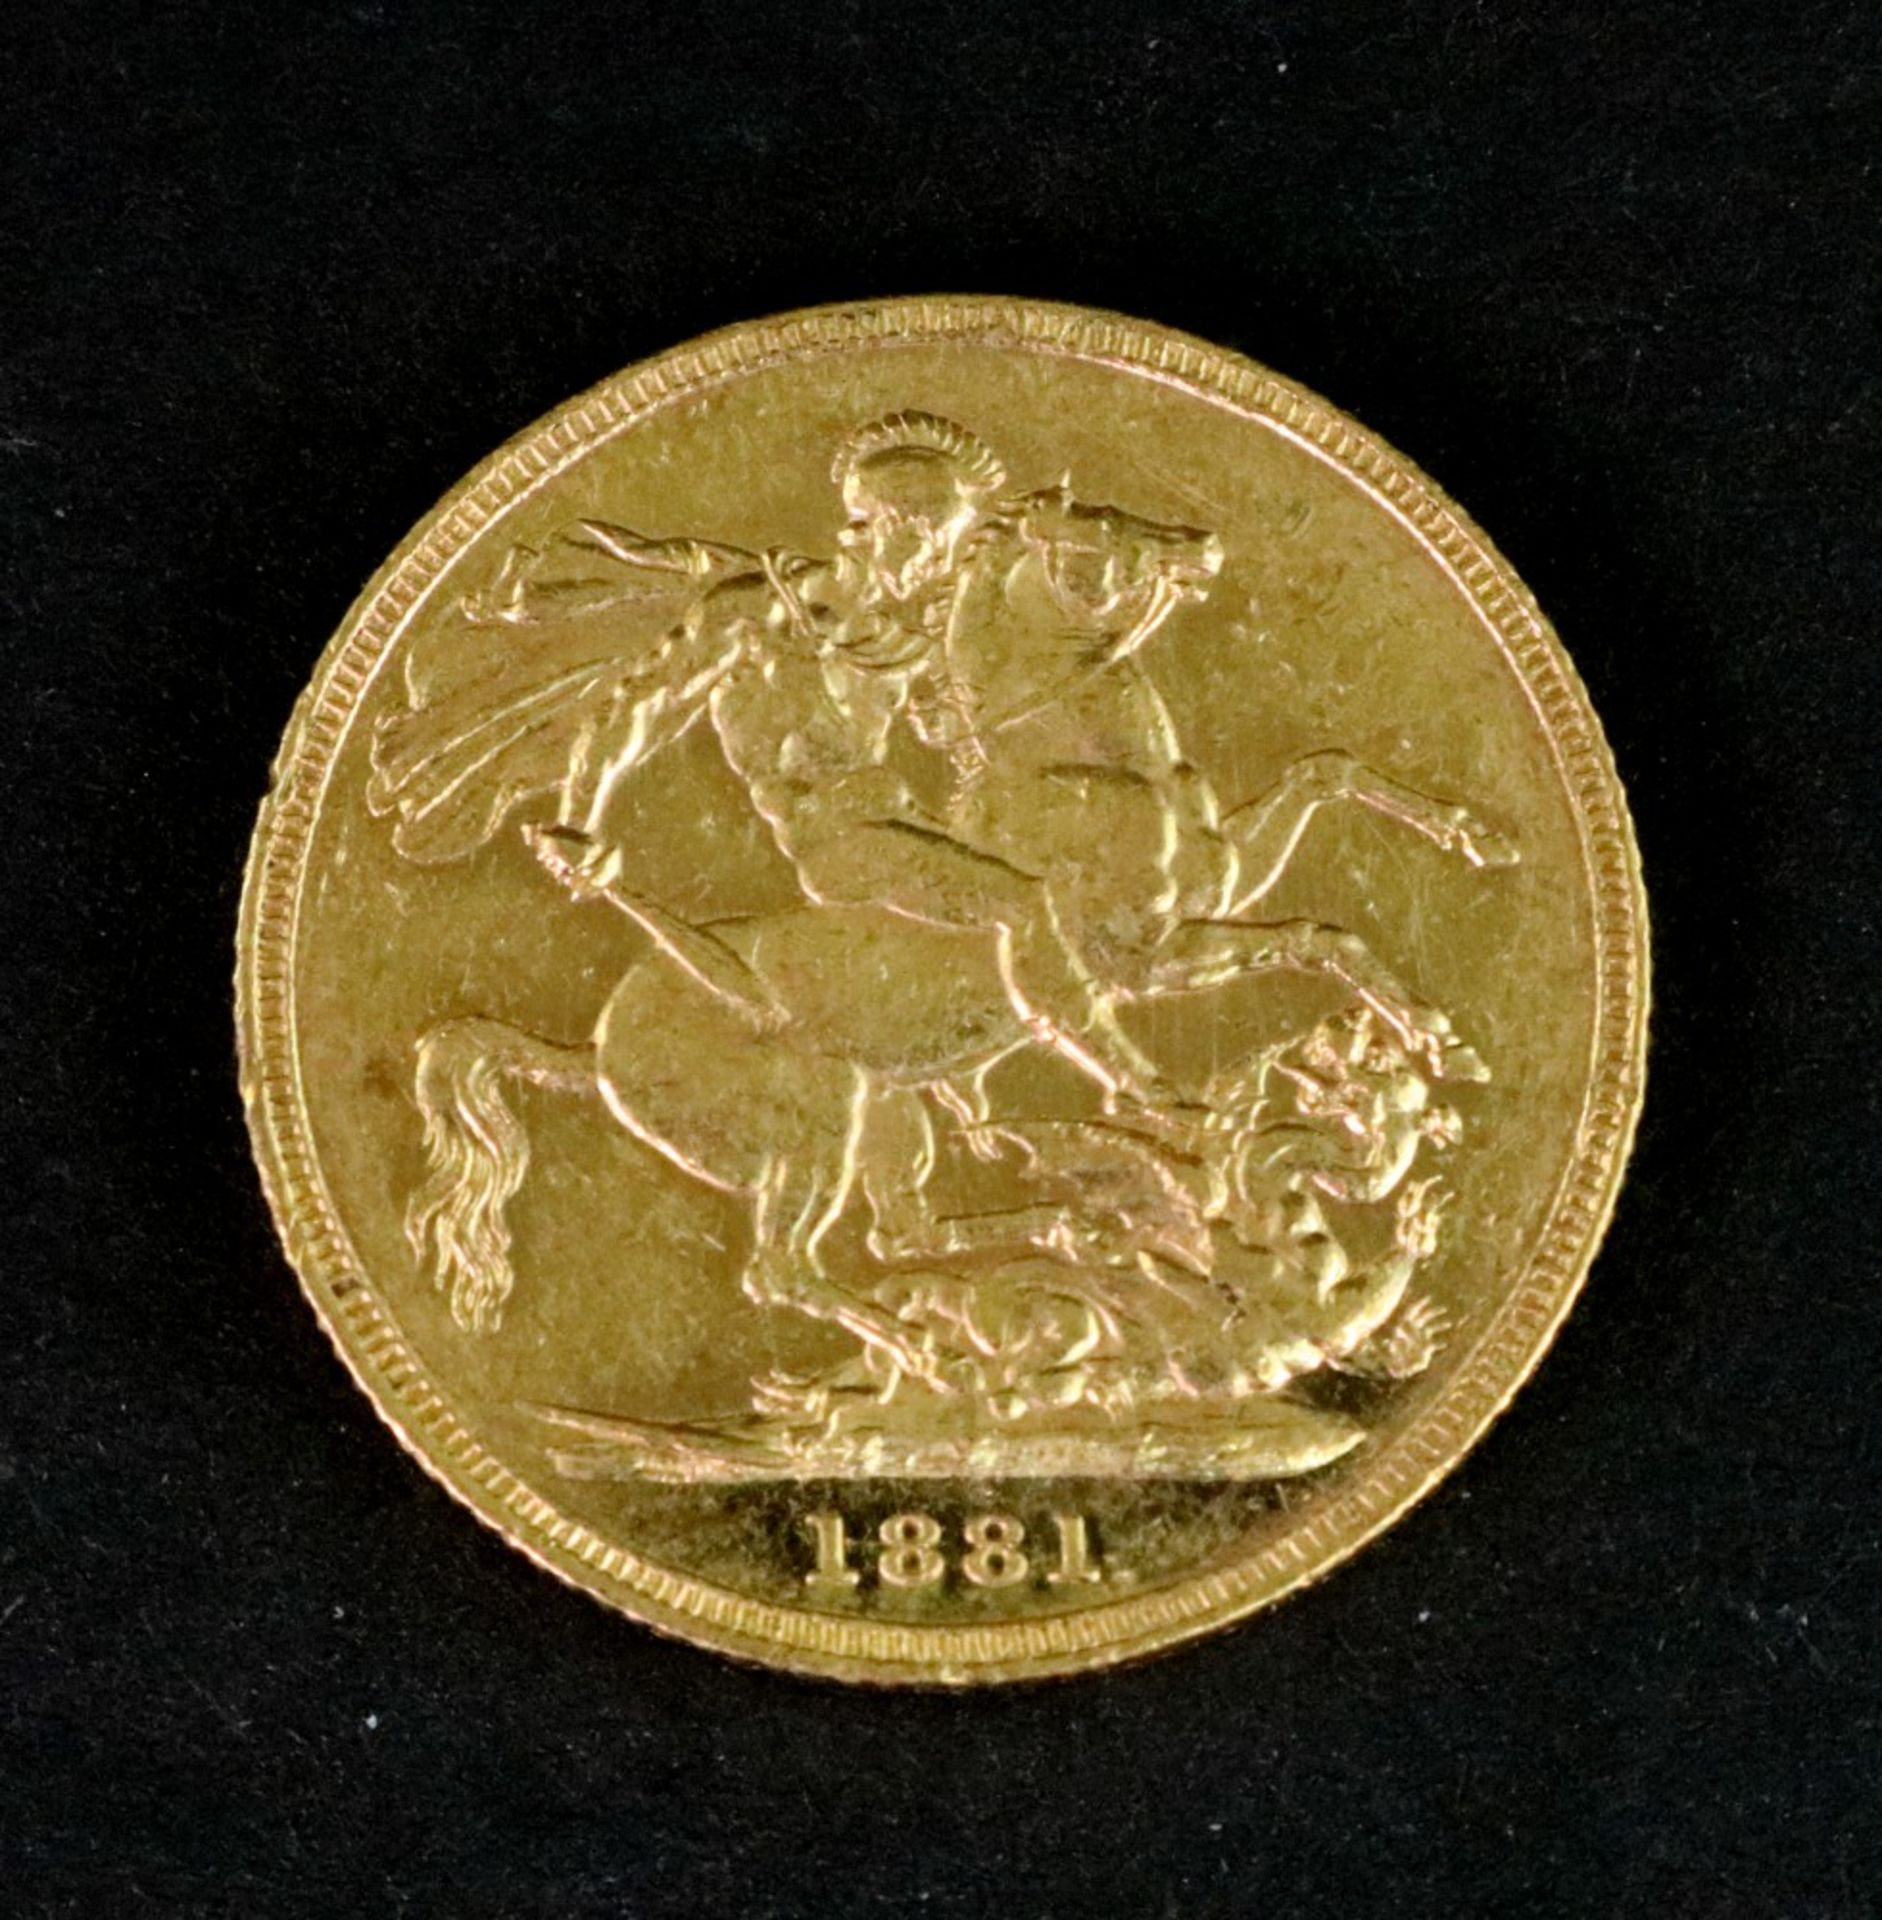 Queen Victoria sovereign 1881.